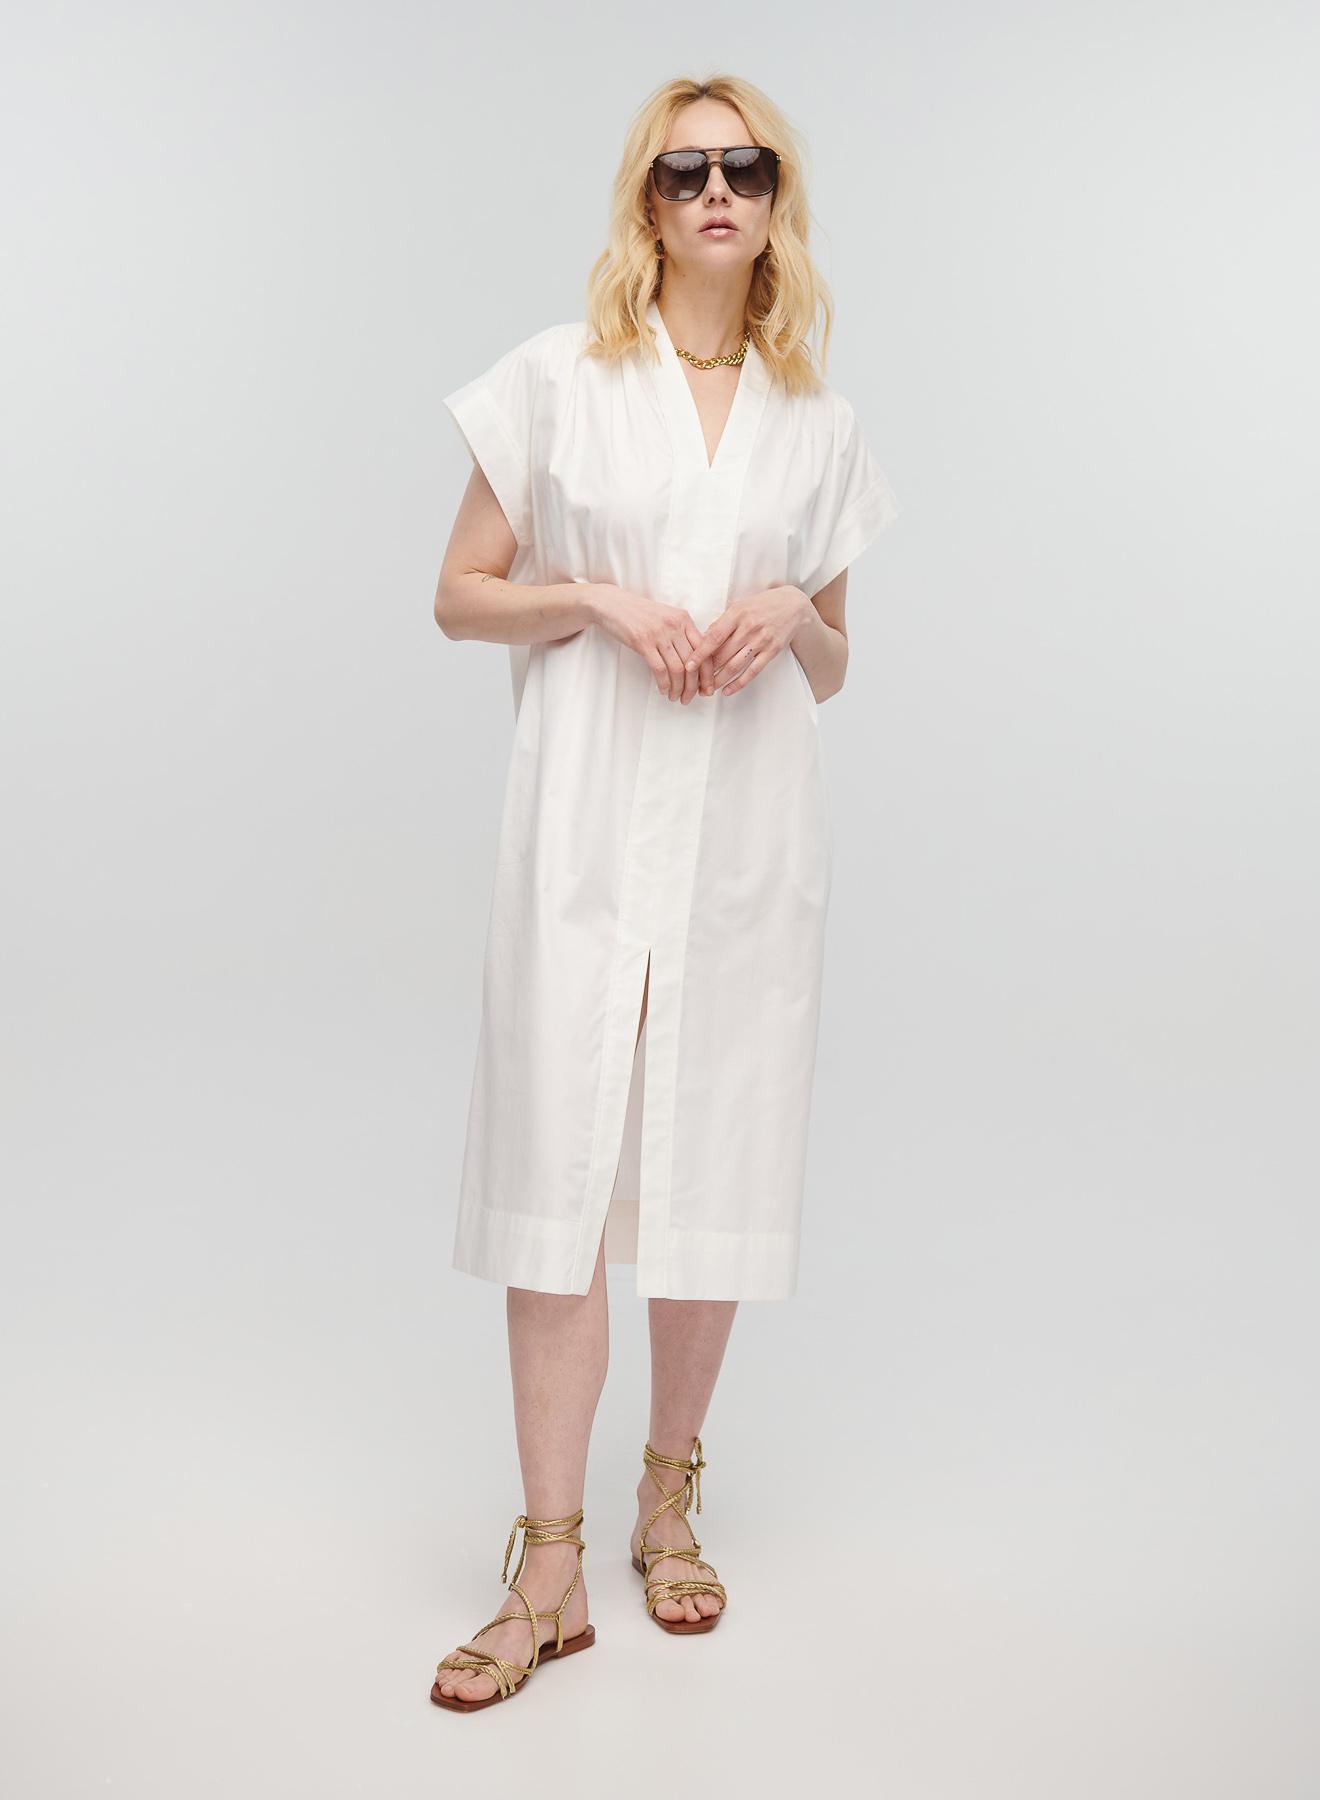 Λευκό μακρύ Φόρεμα αμάνικο με V λαιμόκοψη, ζώνη και σχισμή μπροστά Milla - 1